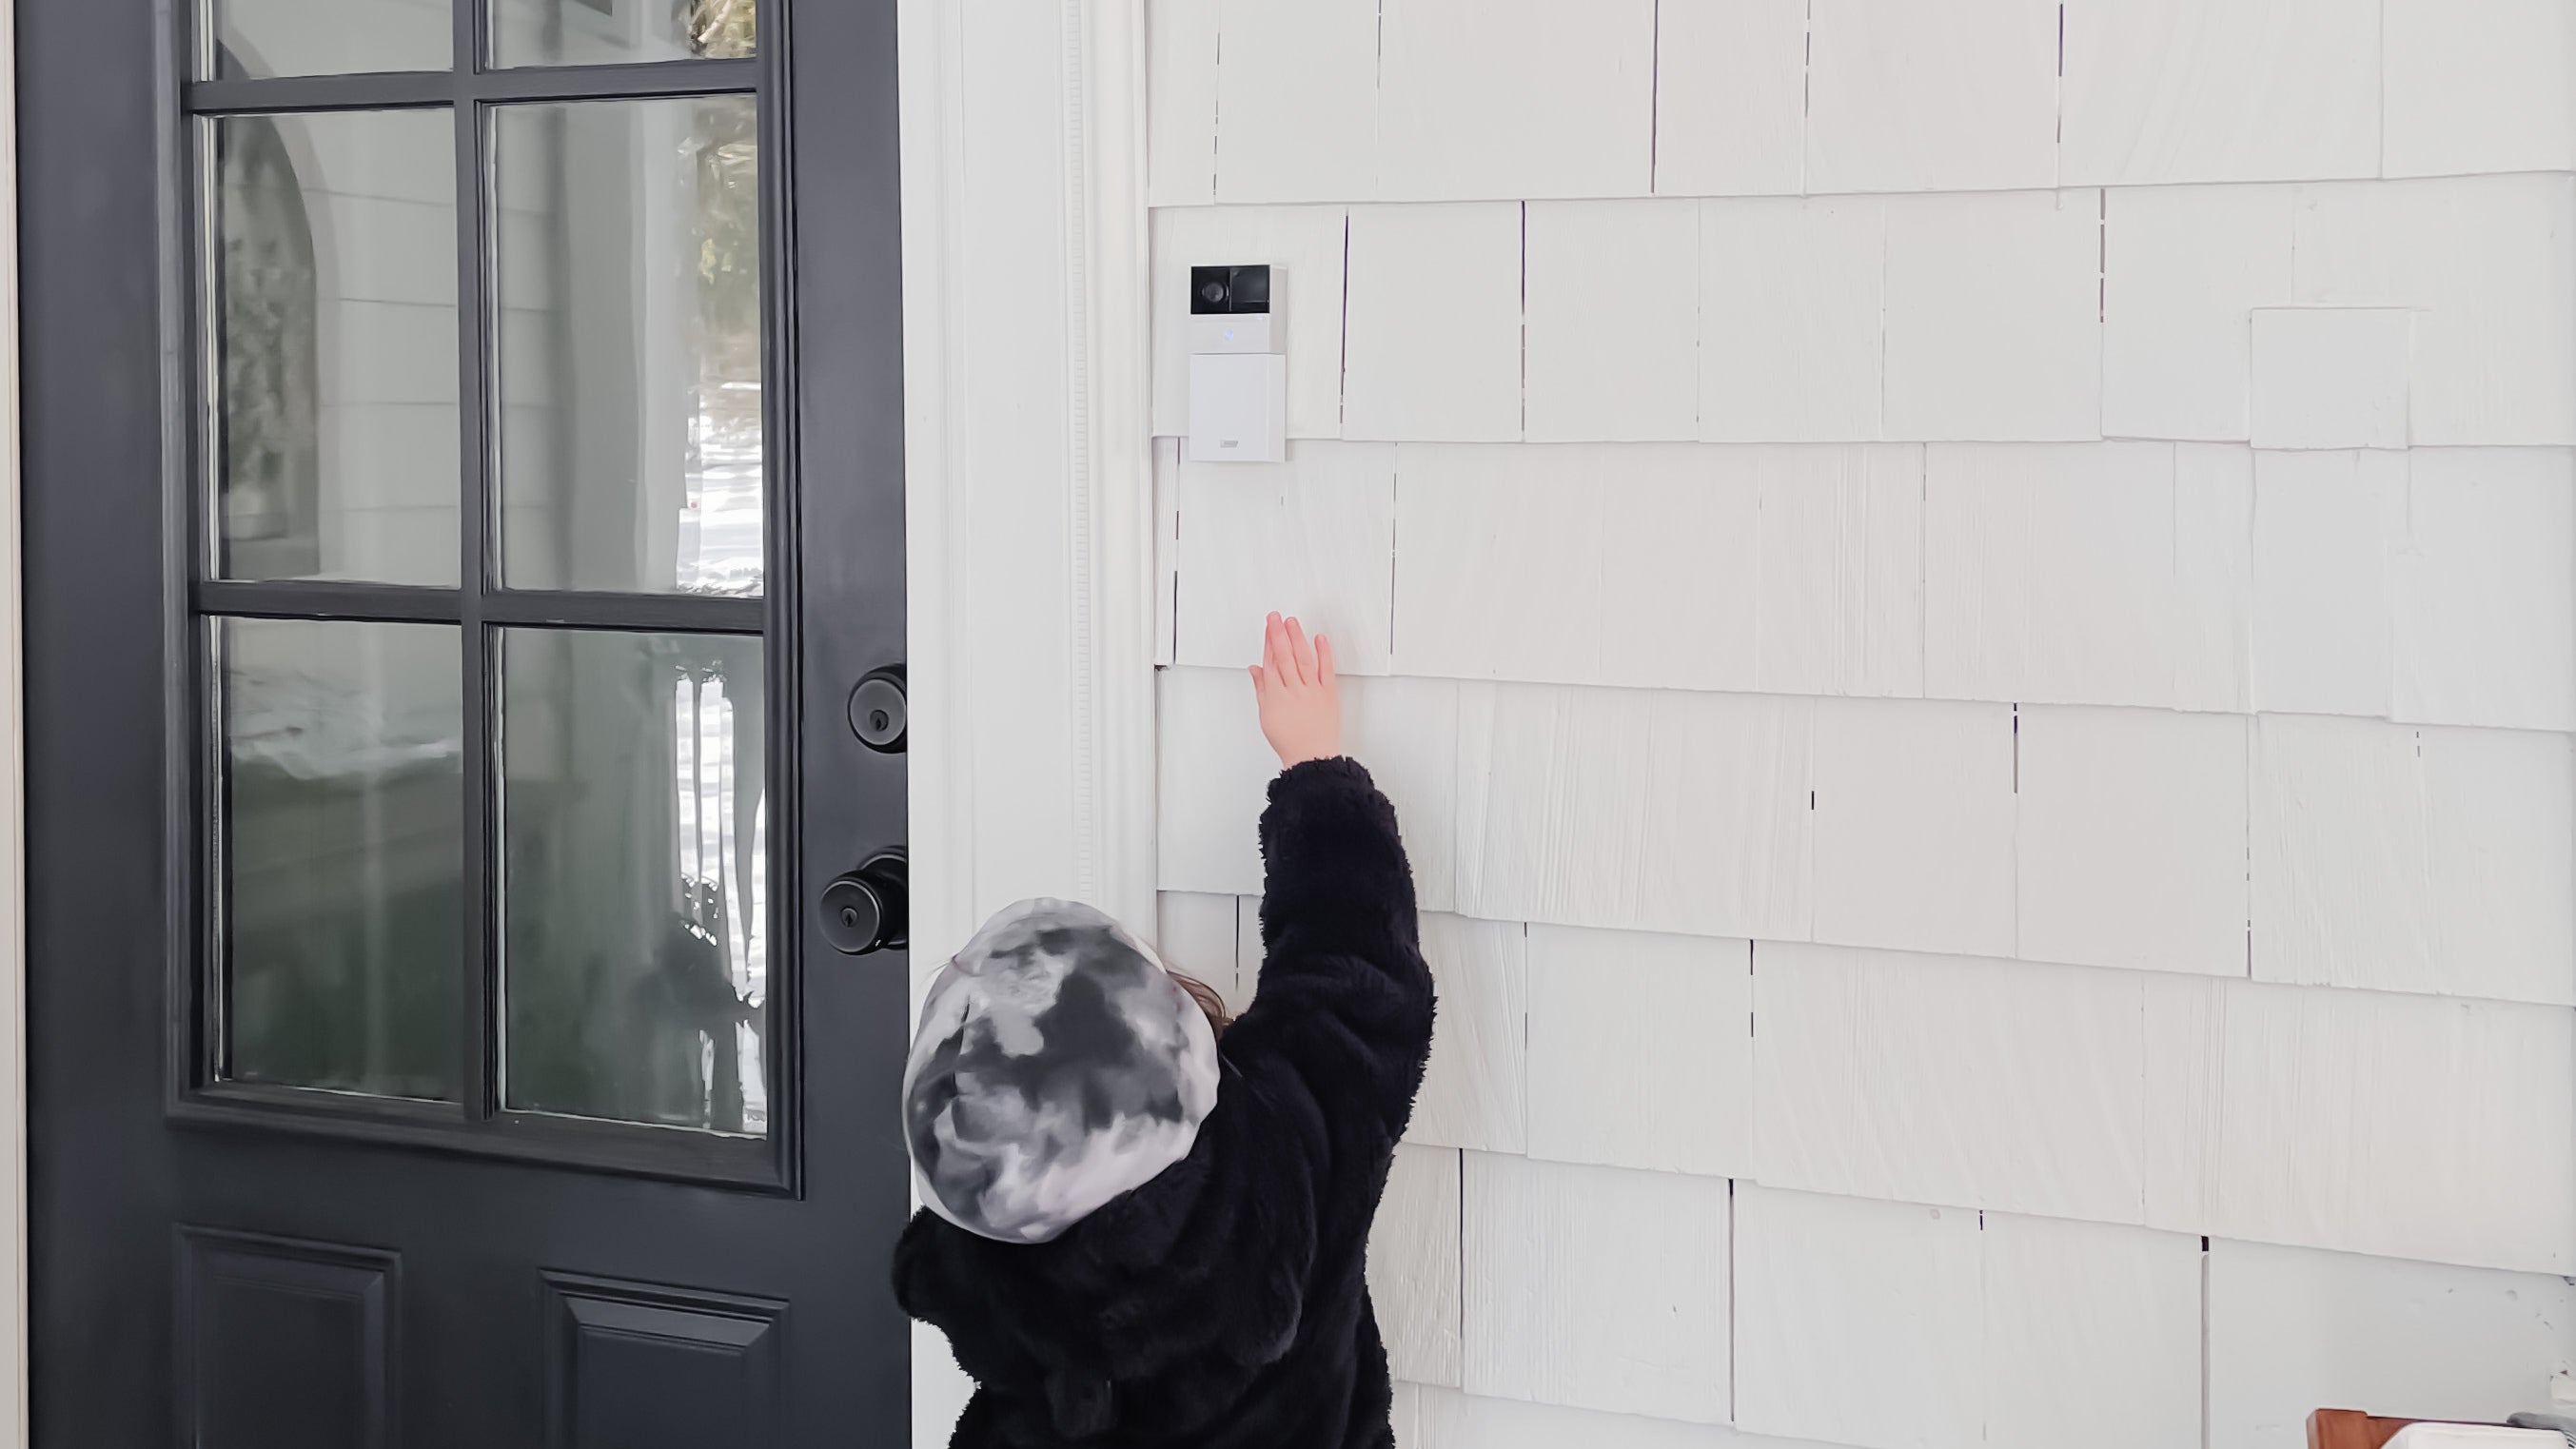 Feit Electric Smart Wi-Fi Doorbell Camera, CAM/DOOR/WIFI